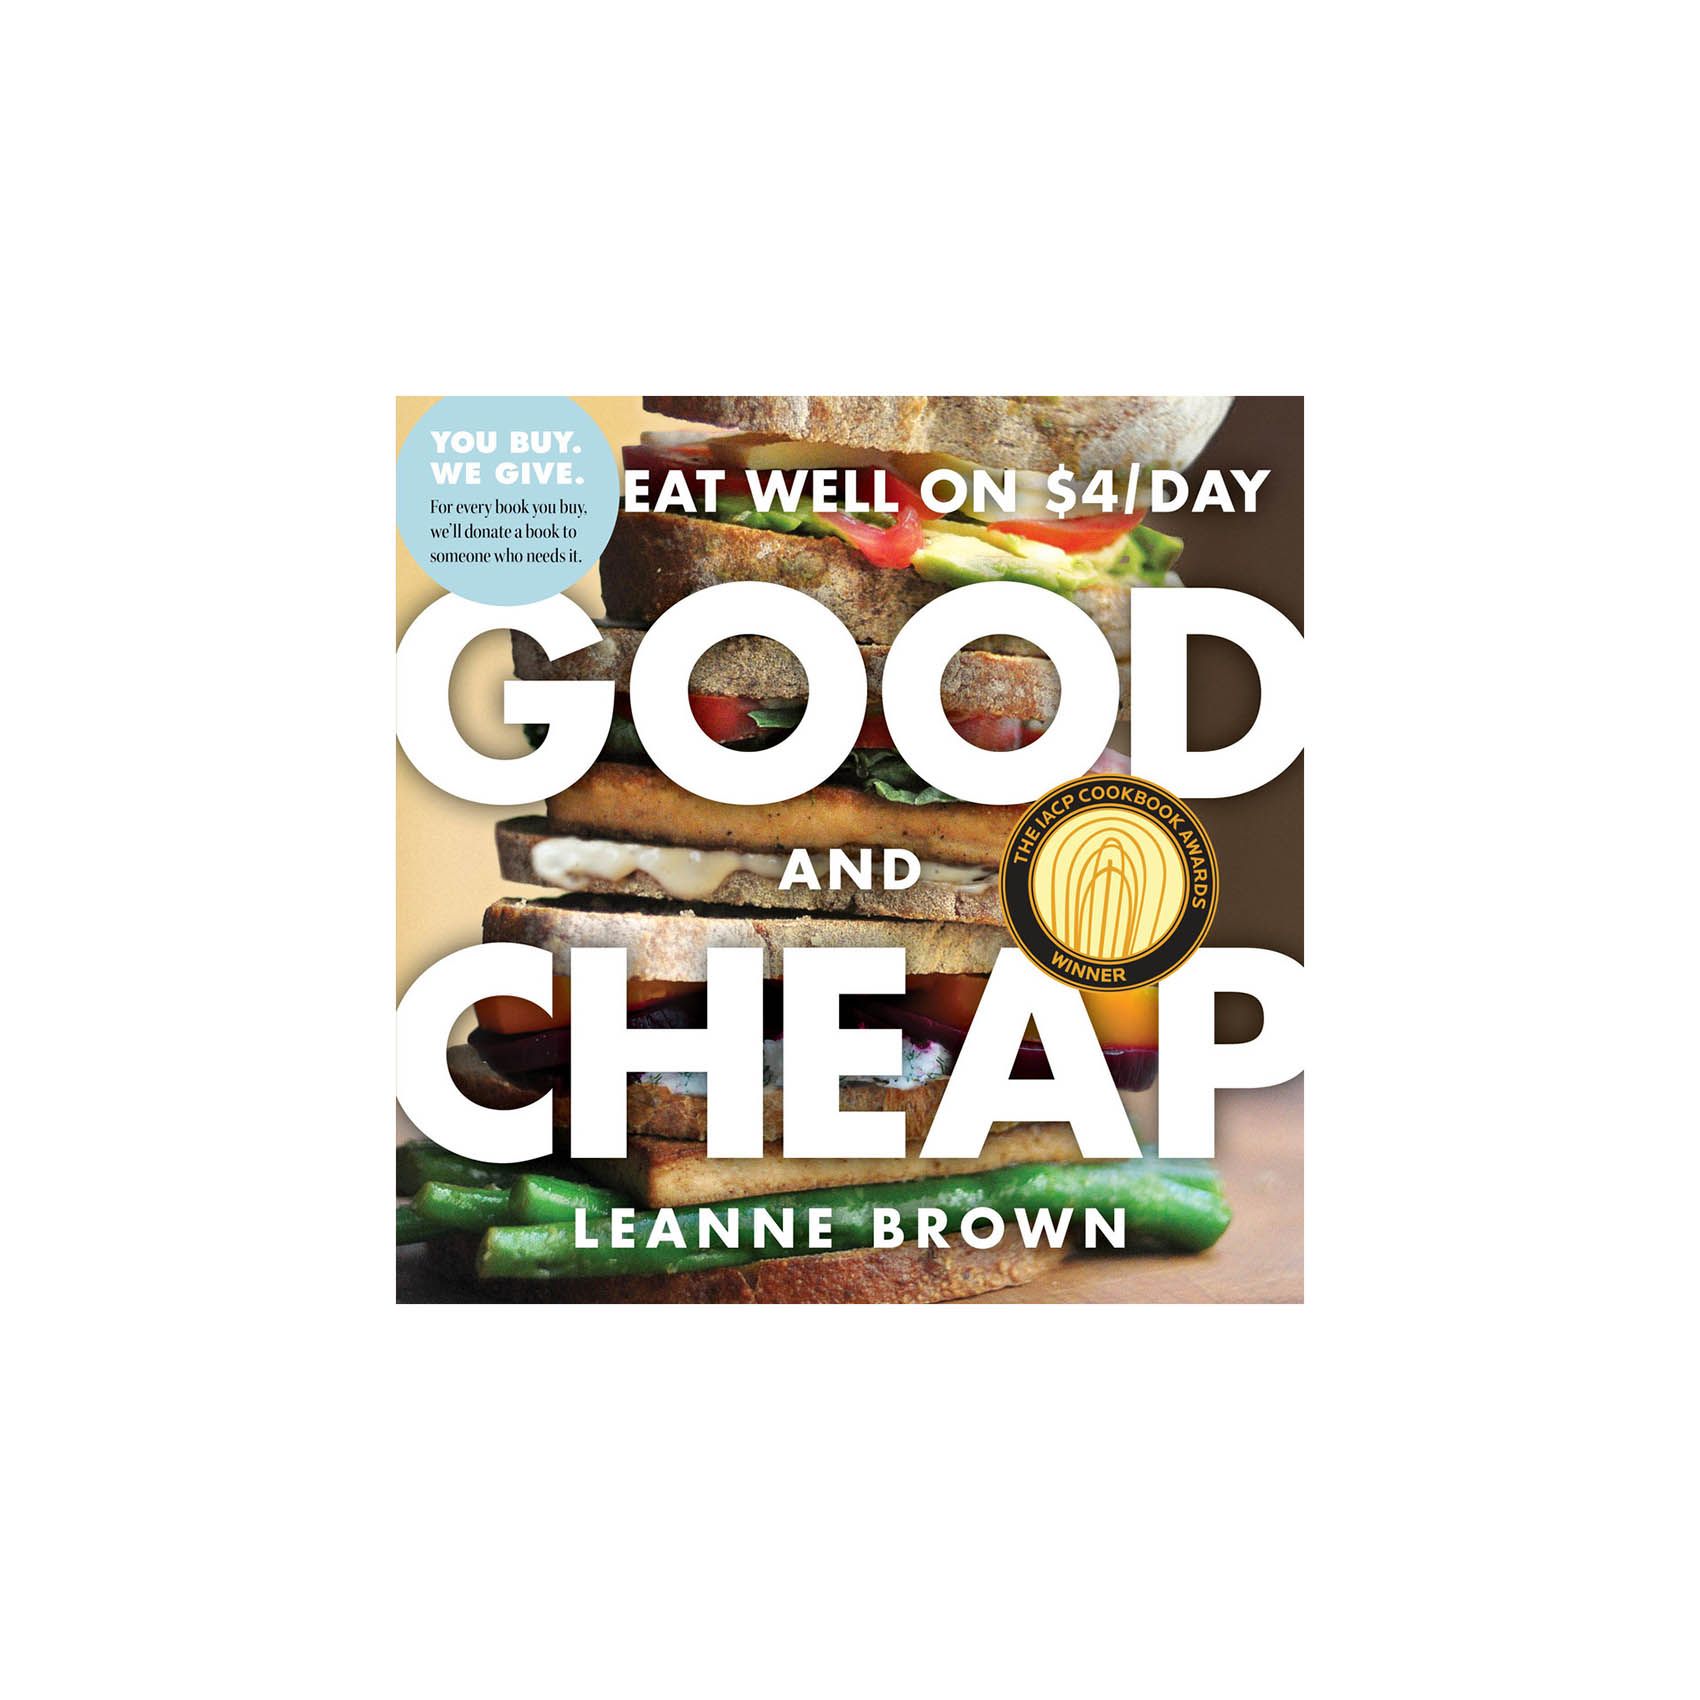 Hyvä ja halpa: Syö hyvin 4 dollaria / päivä, kirjoittanut Leanne Brown